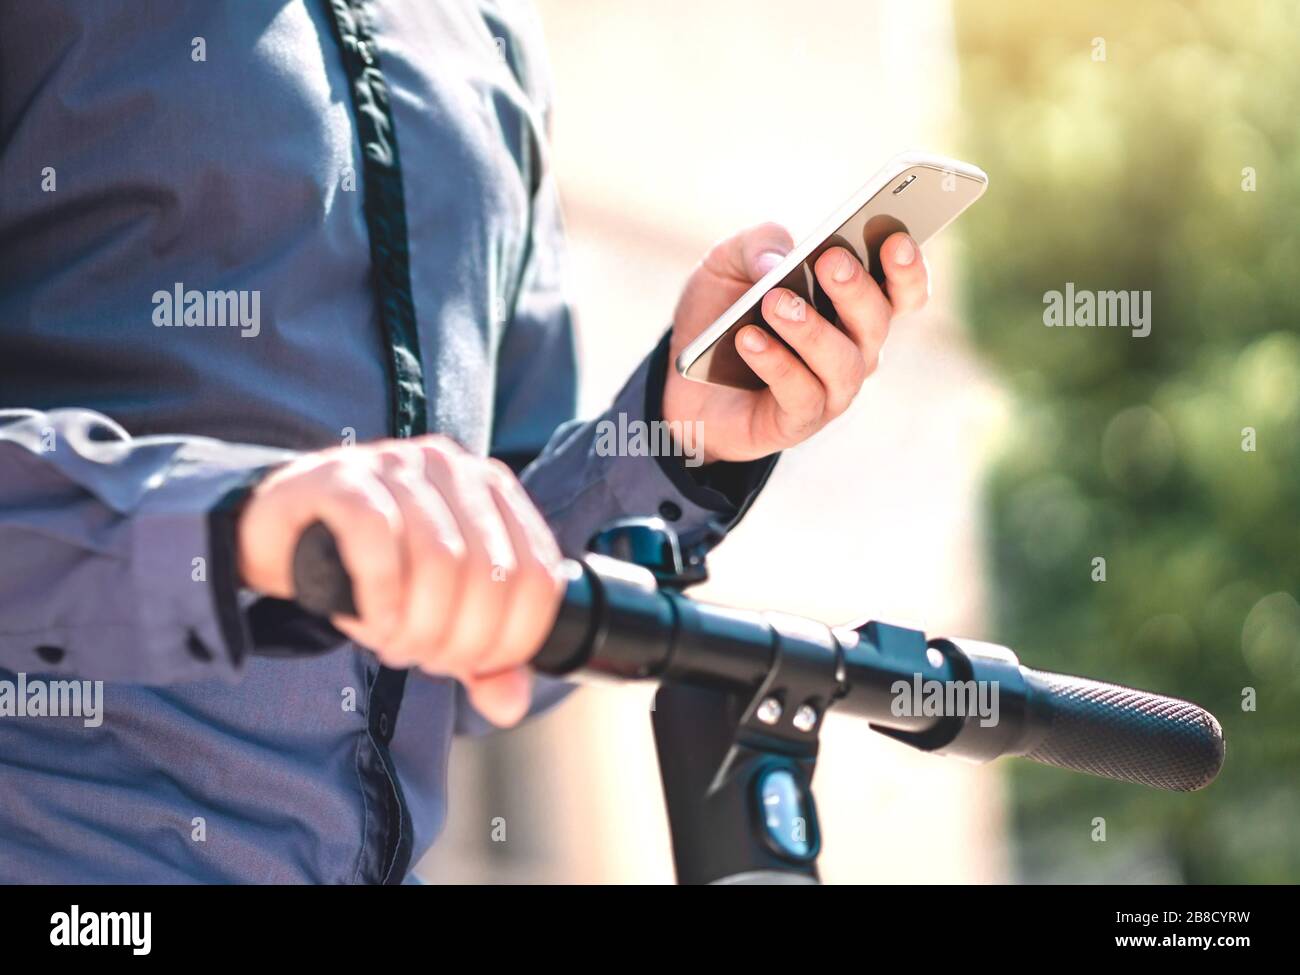 Aplicación de alquiler de scooter eléctrico en el teléfono. Hombre que utiliza el smartphone para alquilar un vehículo electrónico para desplazarse. Aplicación móvil para el transporte ecológico. Foto de stock